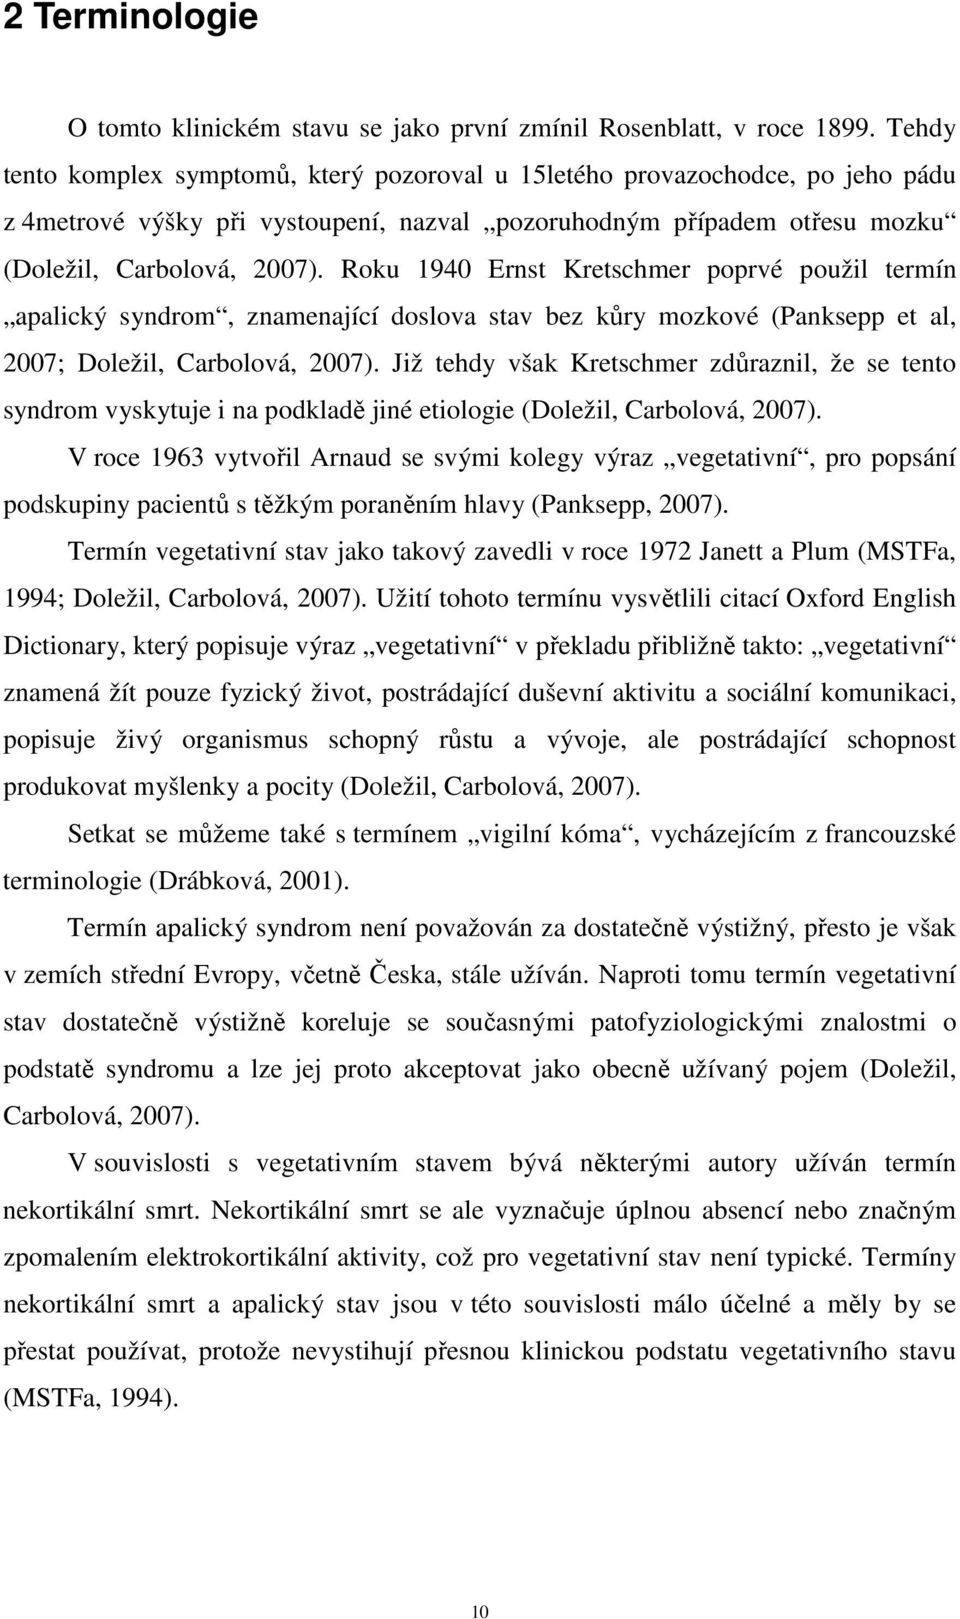 Roku 1940 Ernst Kretschmer poprvé použil termín apalický syndrom, znamenající doslova stav bez kůry mozkové (Panksepp et al, 2007; Doležil, Carbolová, 2007).